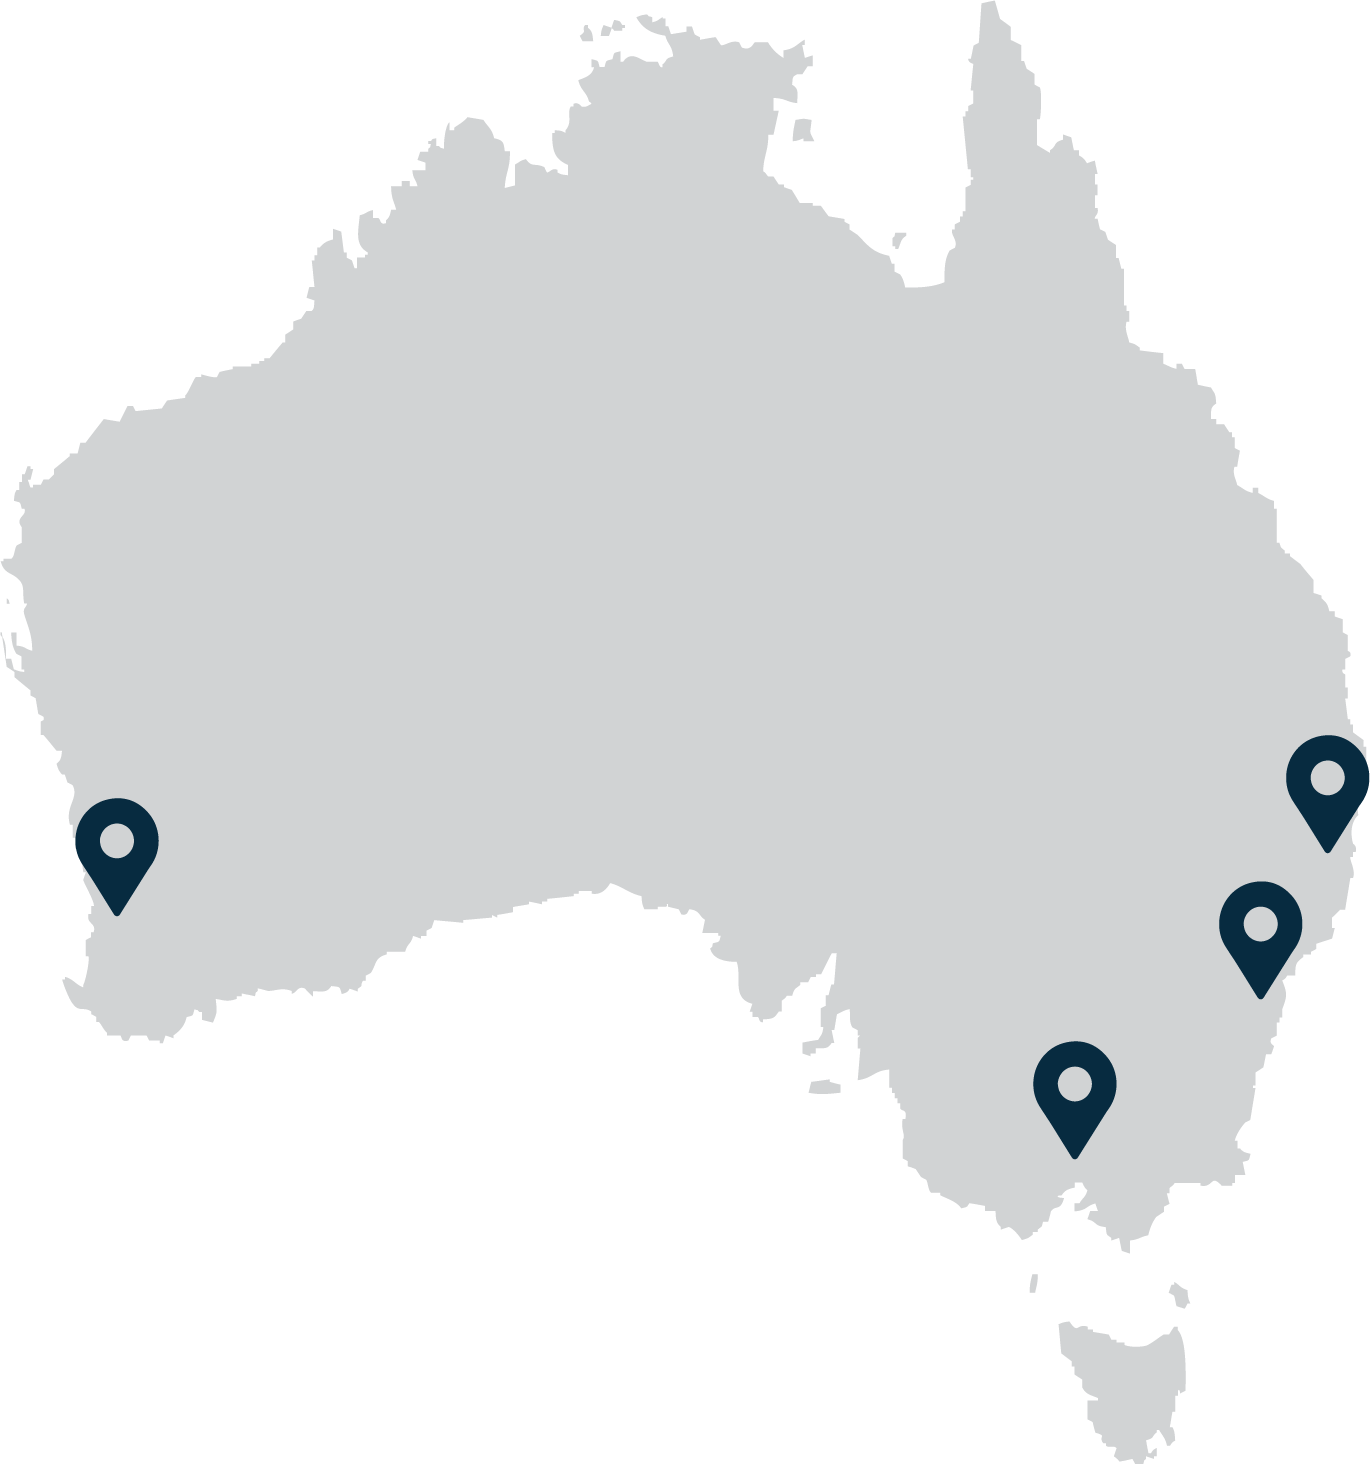 Karte von Australien mit den Standorten der GRACE-Ausstellungsräume